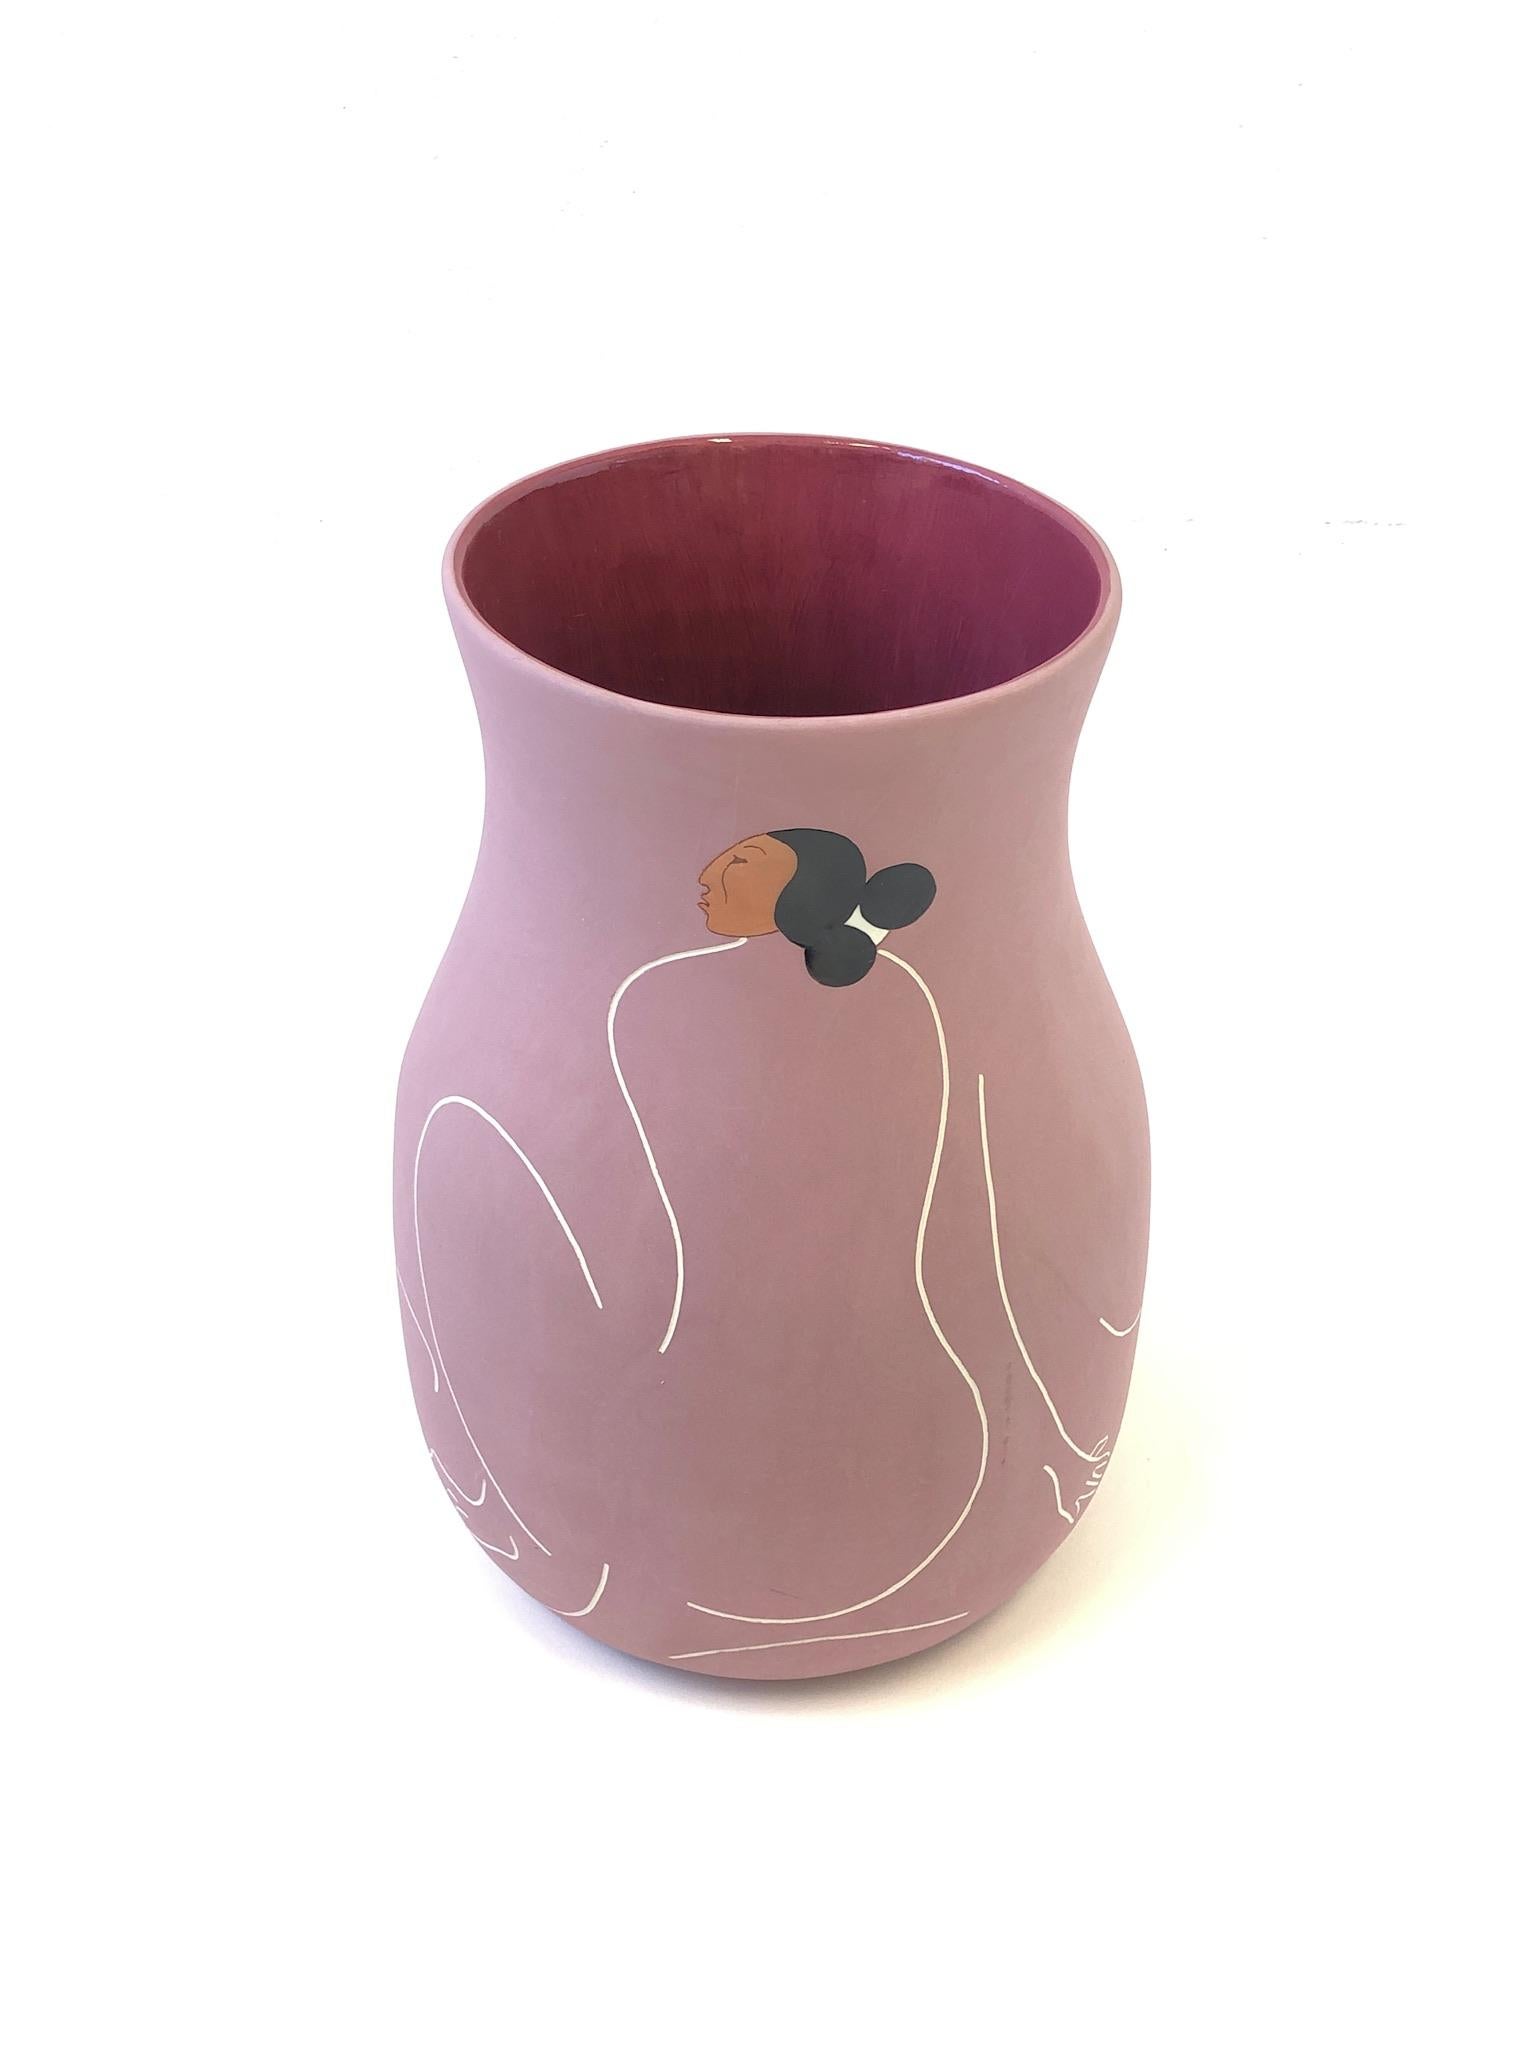 Studio Ceramic Vase by Rudolph Carl Gorman 1